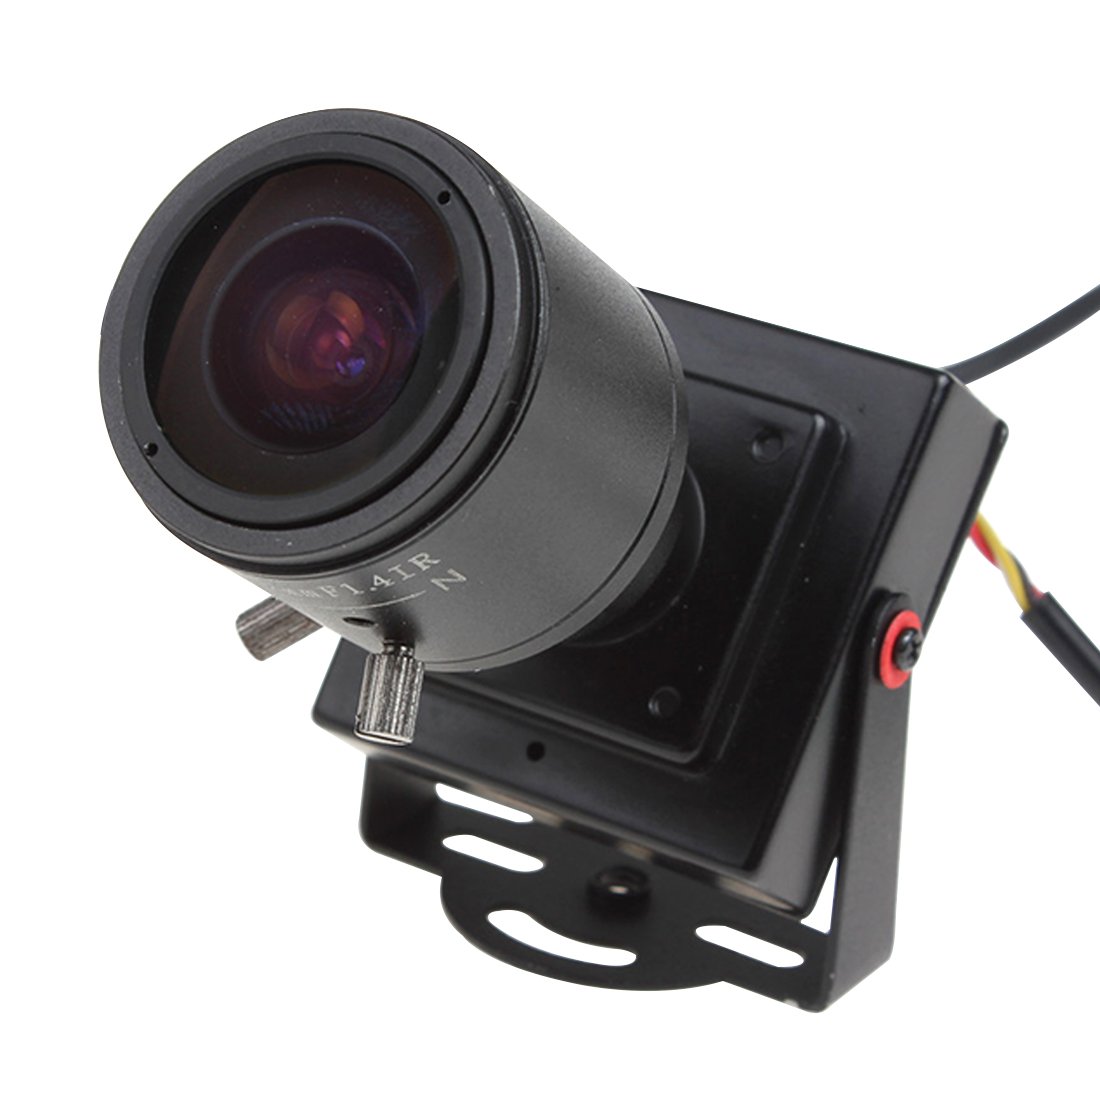 ePathChina PAL 2,8-12mm Manuelle Objektiv 600TVL 1/3 CMOS HD Sensor DC 12V Mini Spy Versteckte Kamera Sicherheit Farbe Nachtsicht CCTV Kamera Unterstützung Video und Audio-Ausgaang